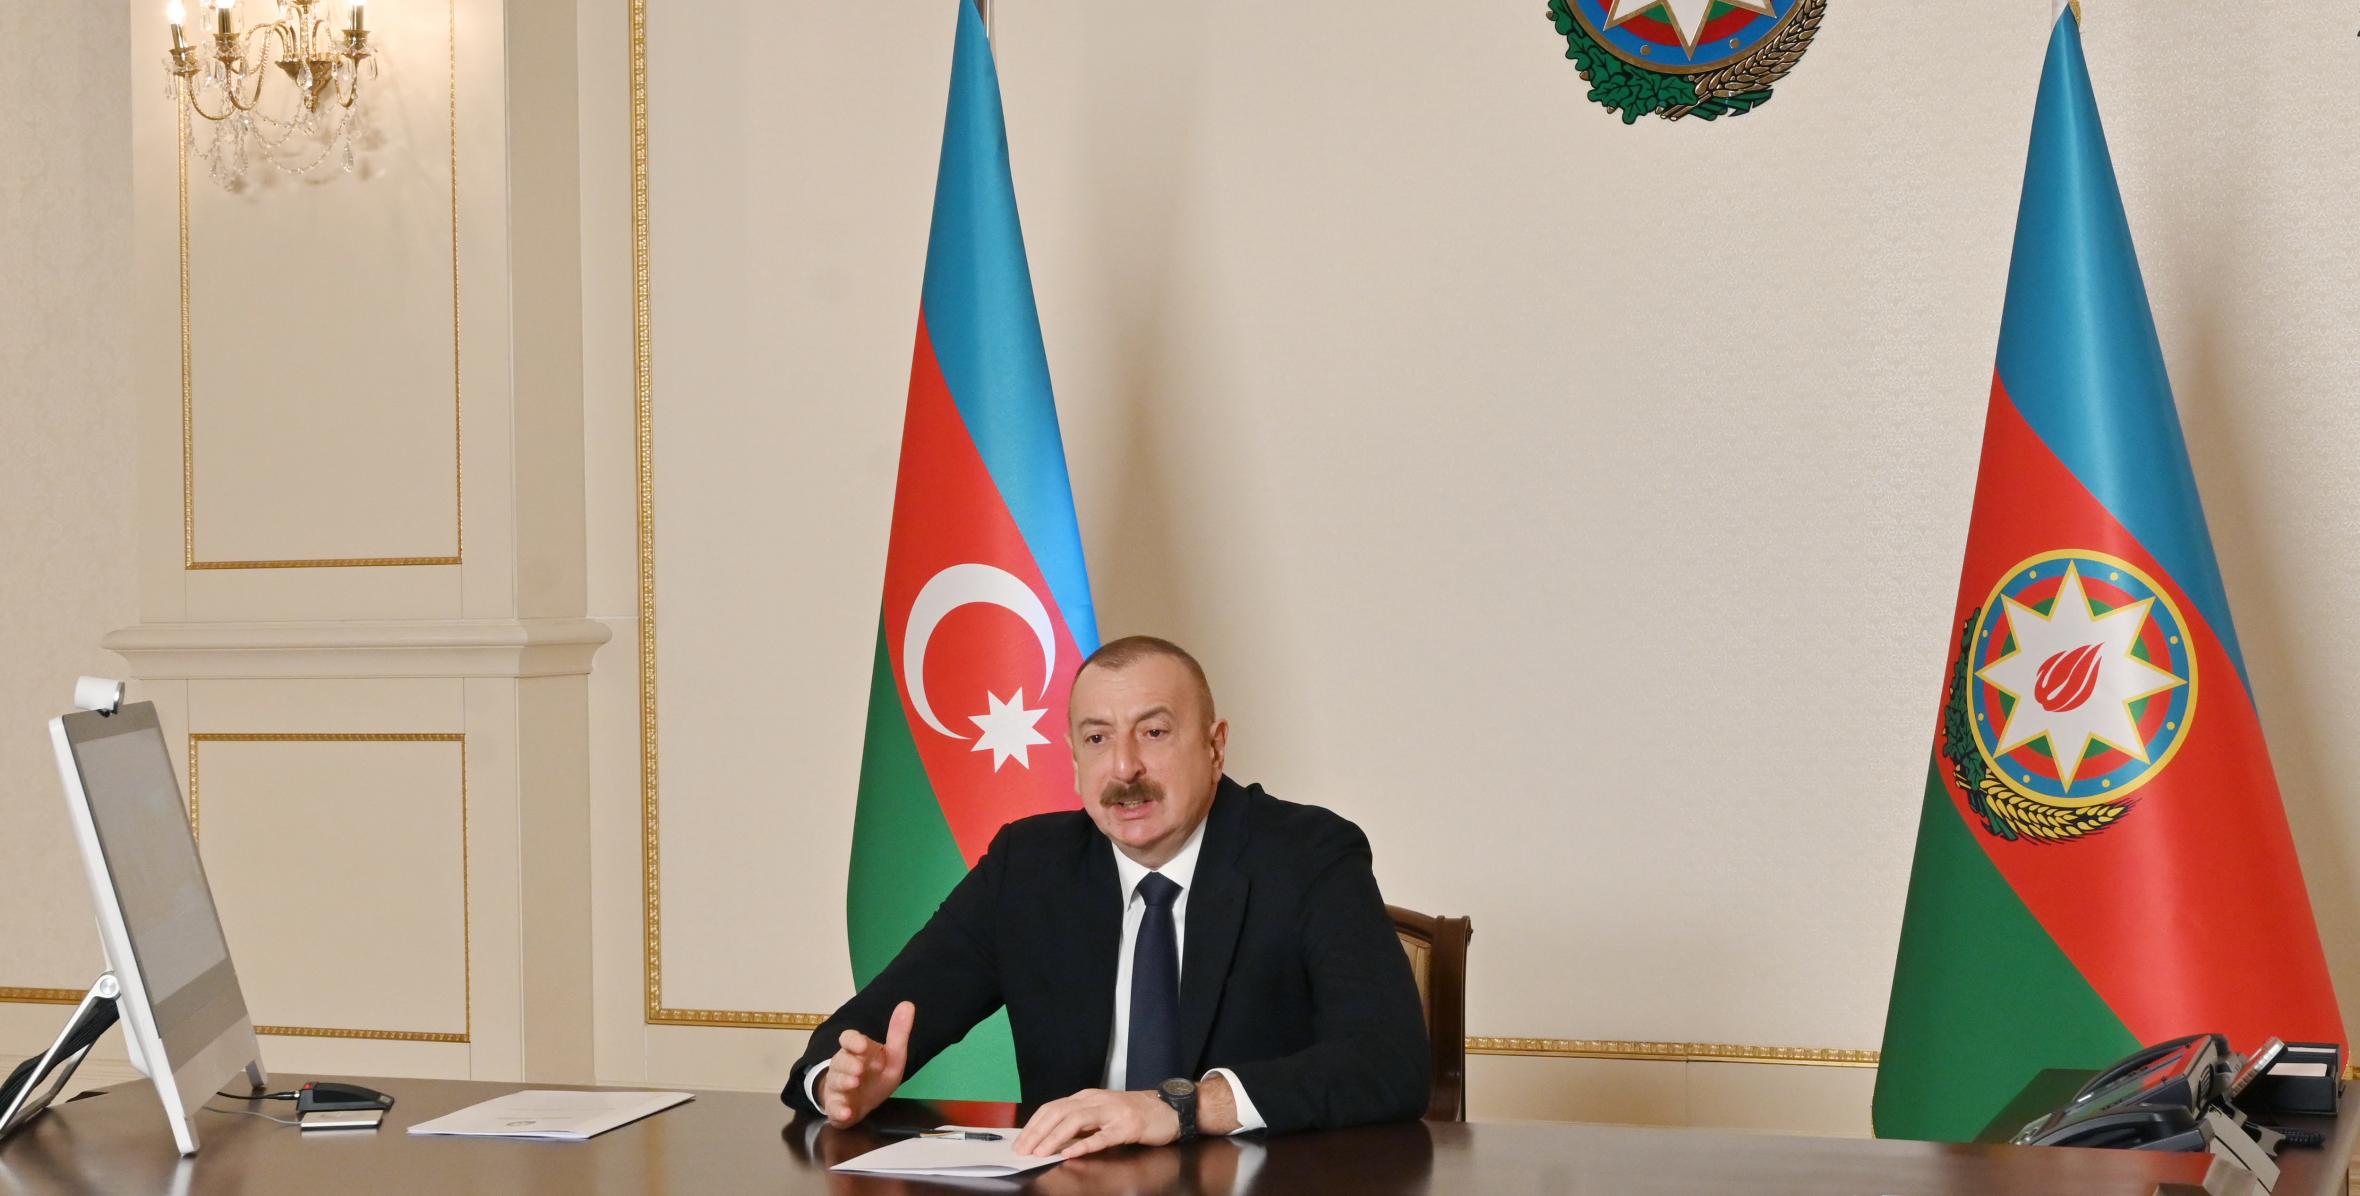 Ильхам Алиев принял в видеоформате президента и учредителя Фонда этнического взаимопонимания США